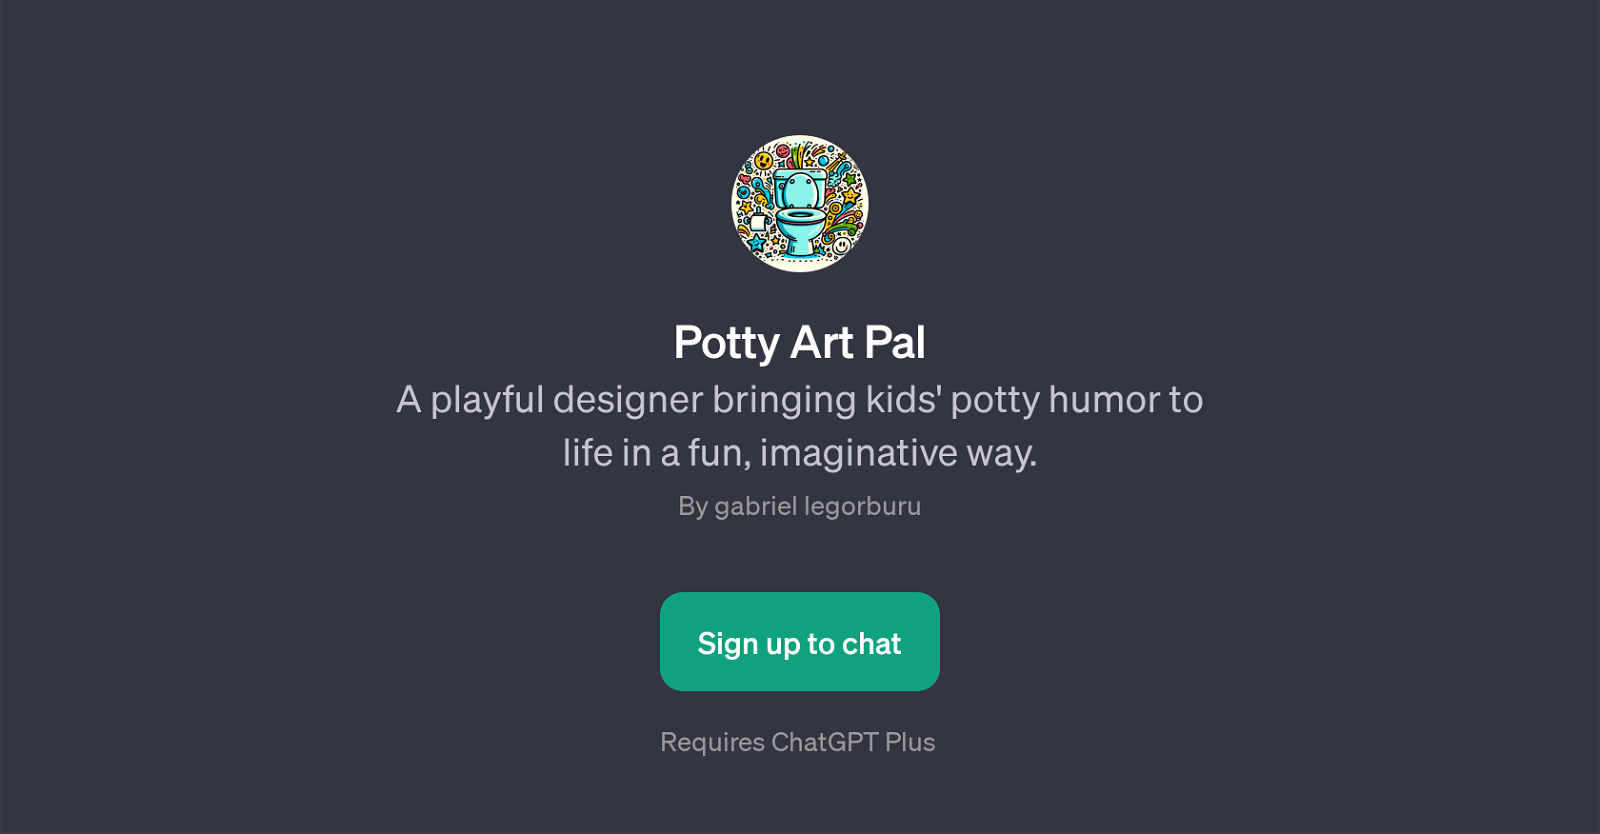 Potty Art Pal website